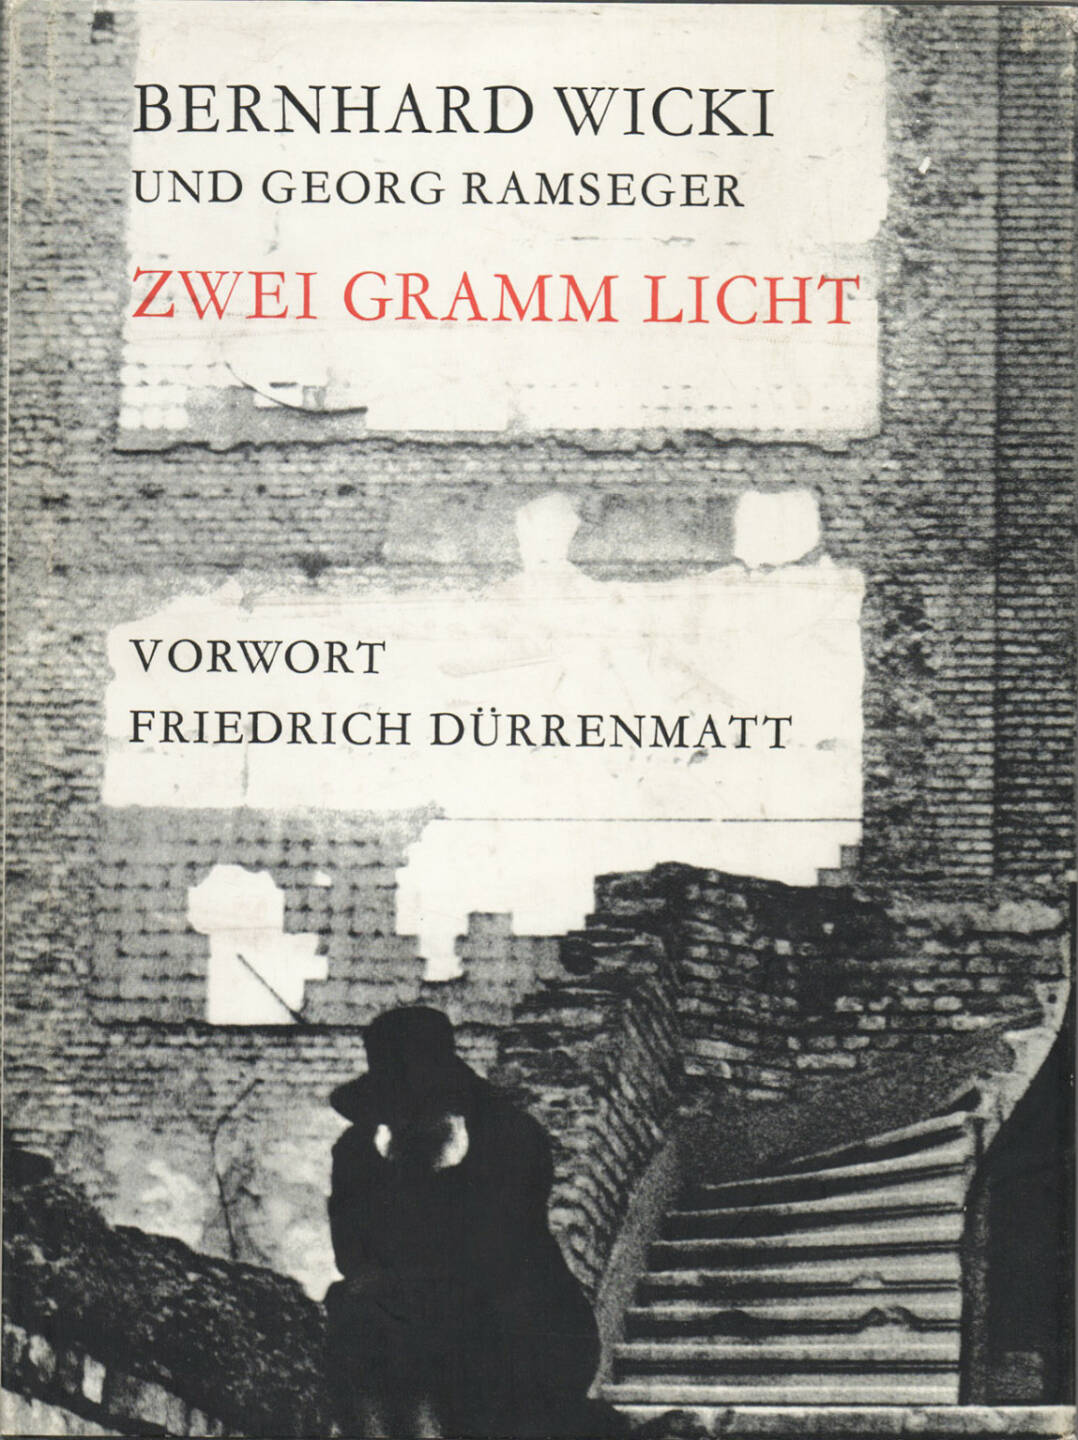 Bernhard Wicki - Zwei Gramm Licht - 150-250 Euro , http://josefchladek.com/book/bernhard_und_georg_ramseger_wicki_-_zwei_gramm_licht